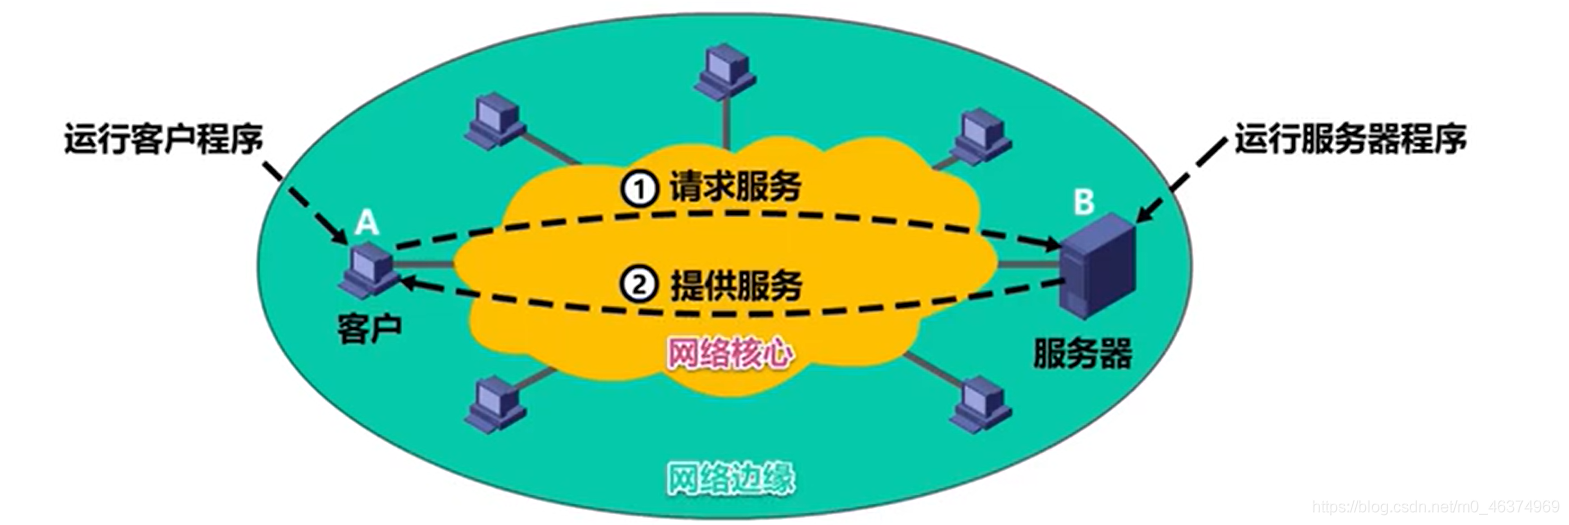 计算机网络学习（九）—应用层的概述_域名服务器_03